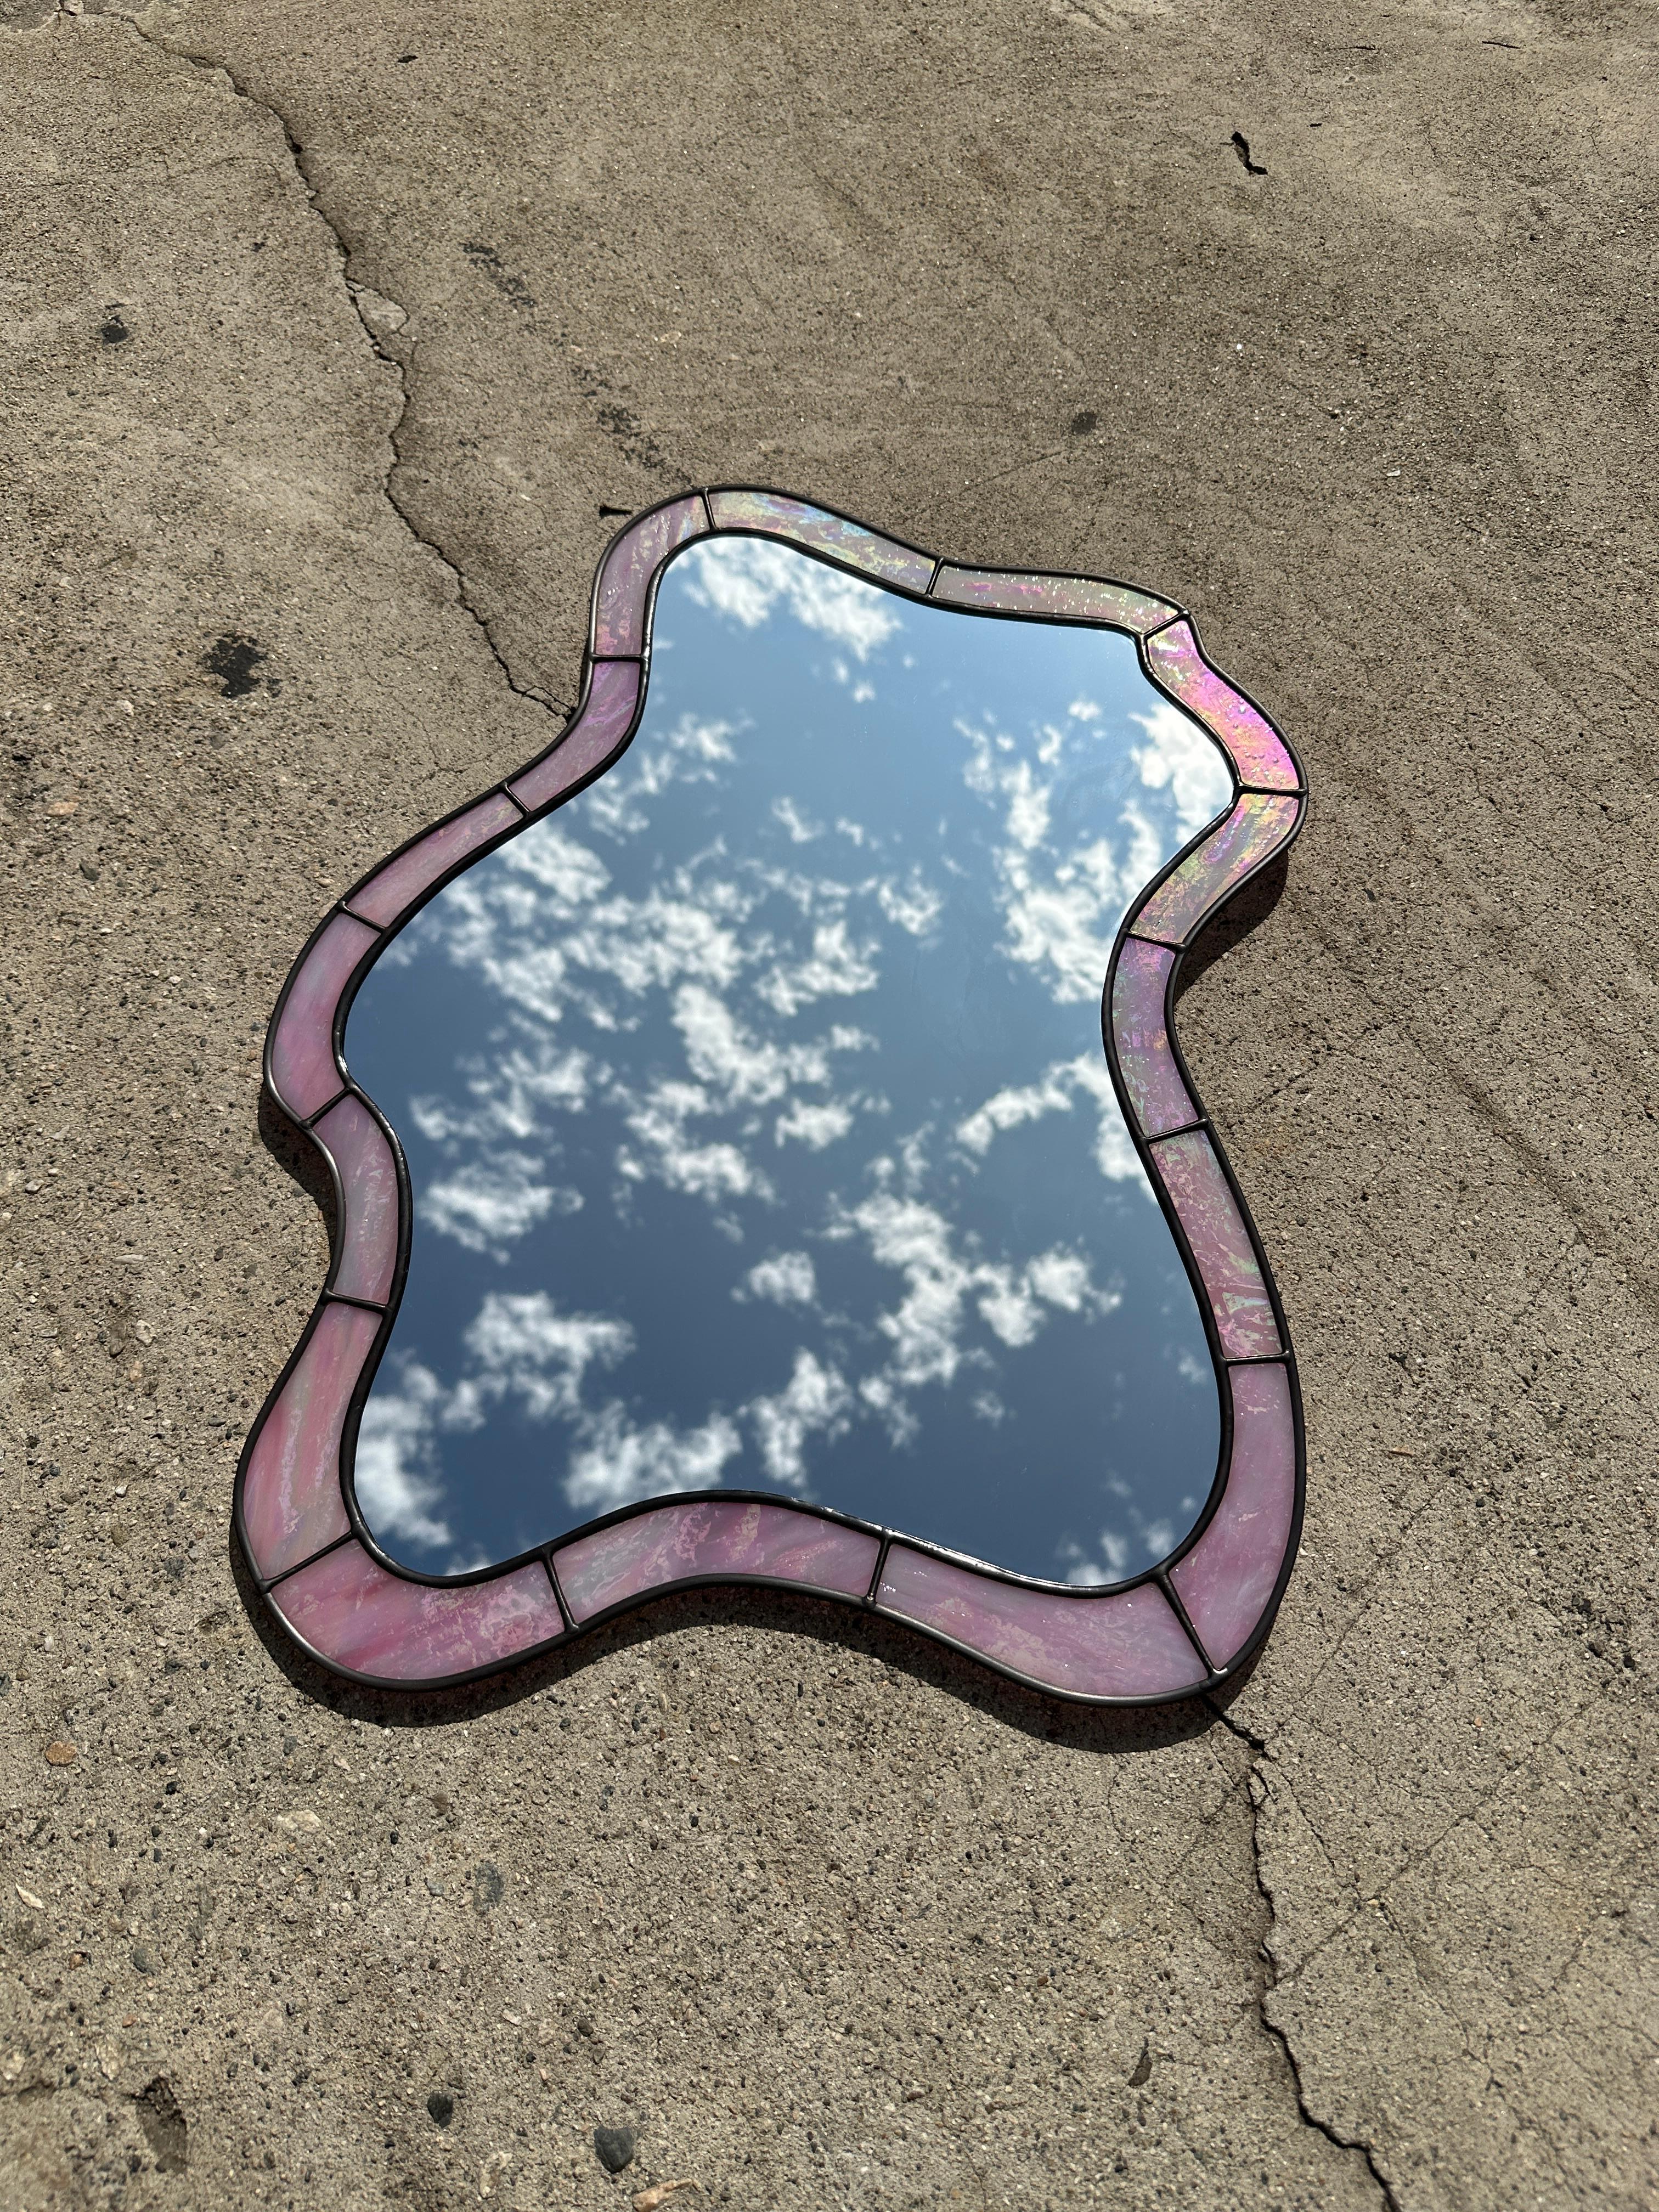 American Cloud Mirror in Iridescent Rose Quartz For Sale